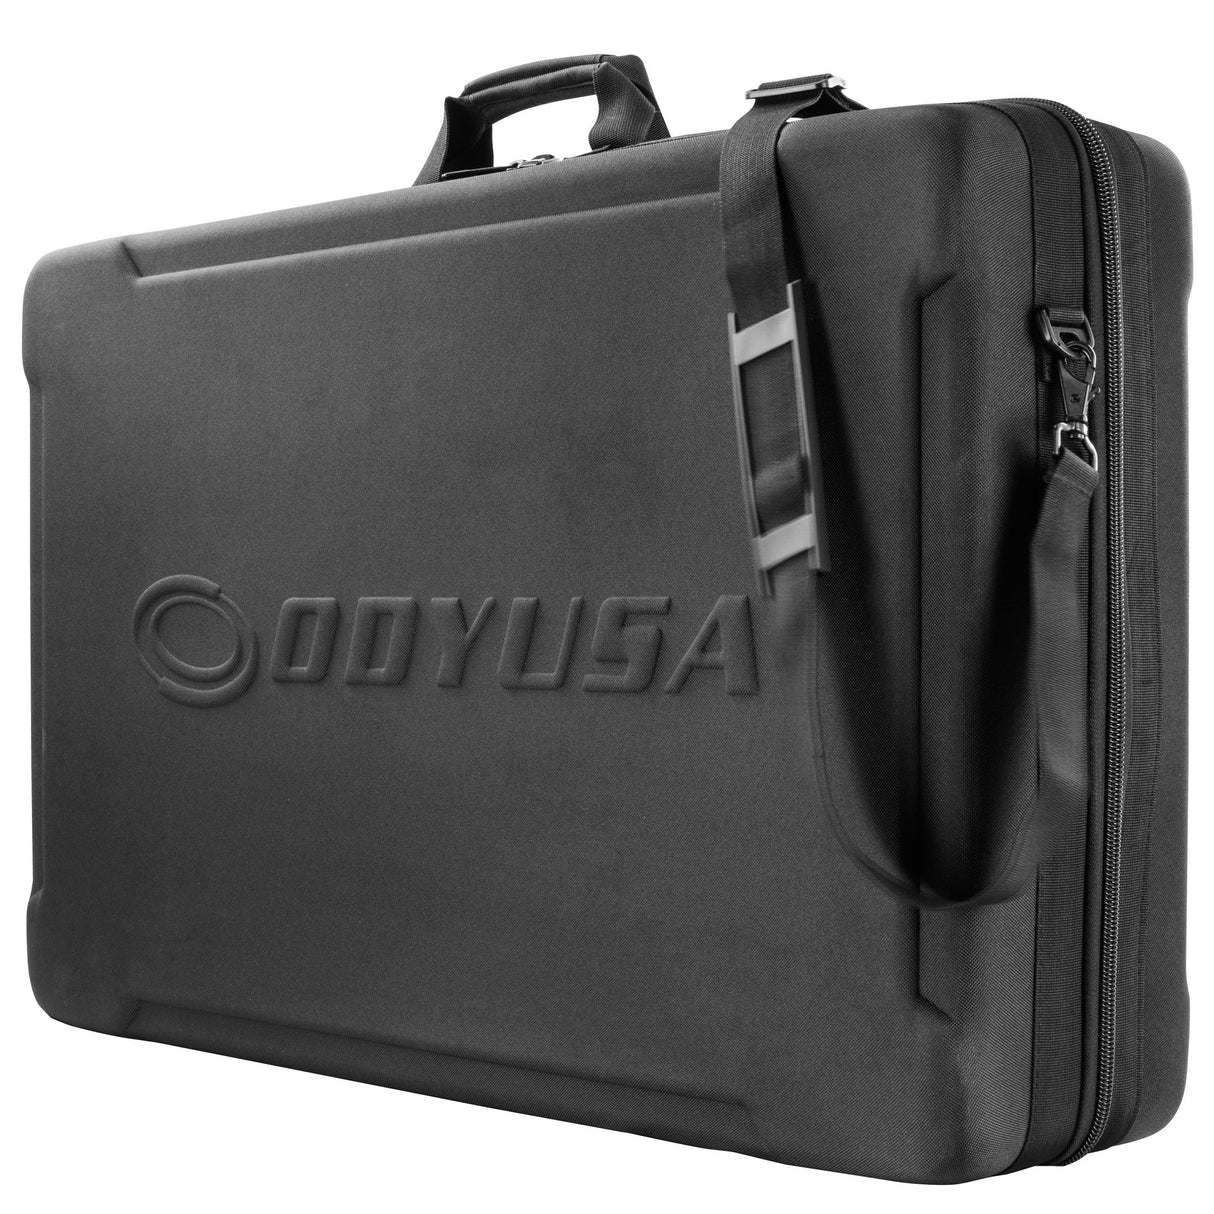 Odyssey BMRANE4M2 EVA Molded Soft Case/Bag for RANE FOUR